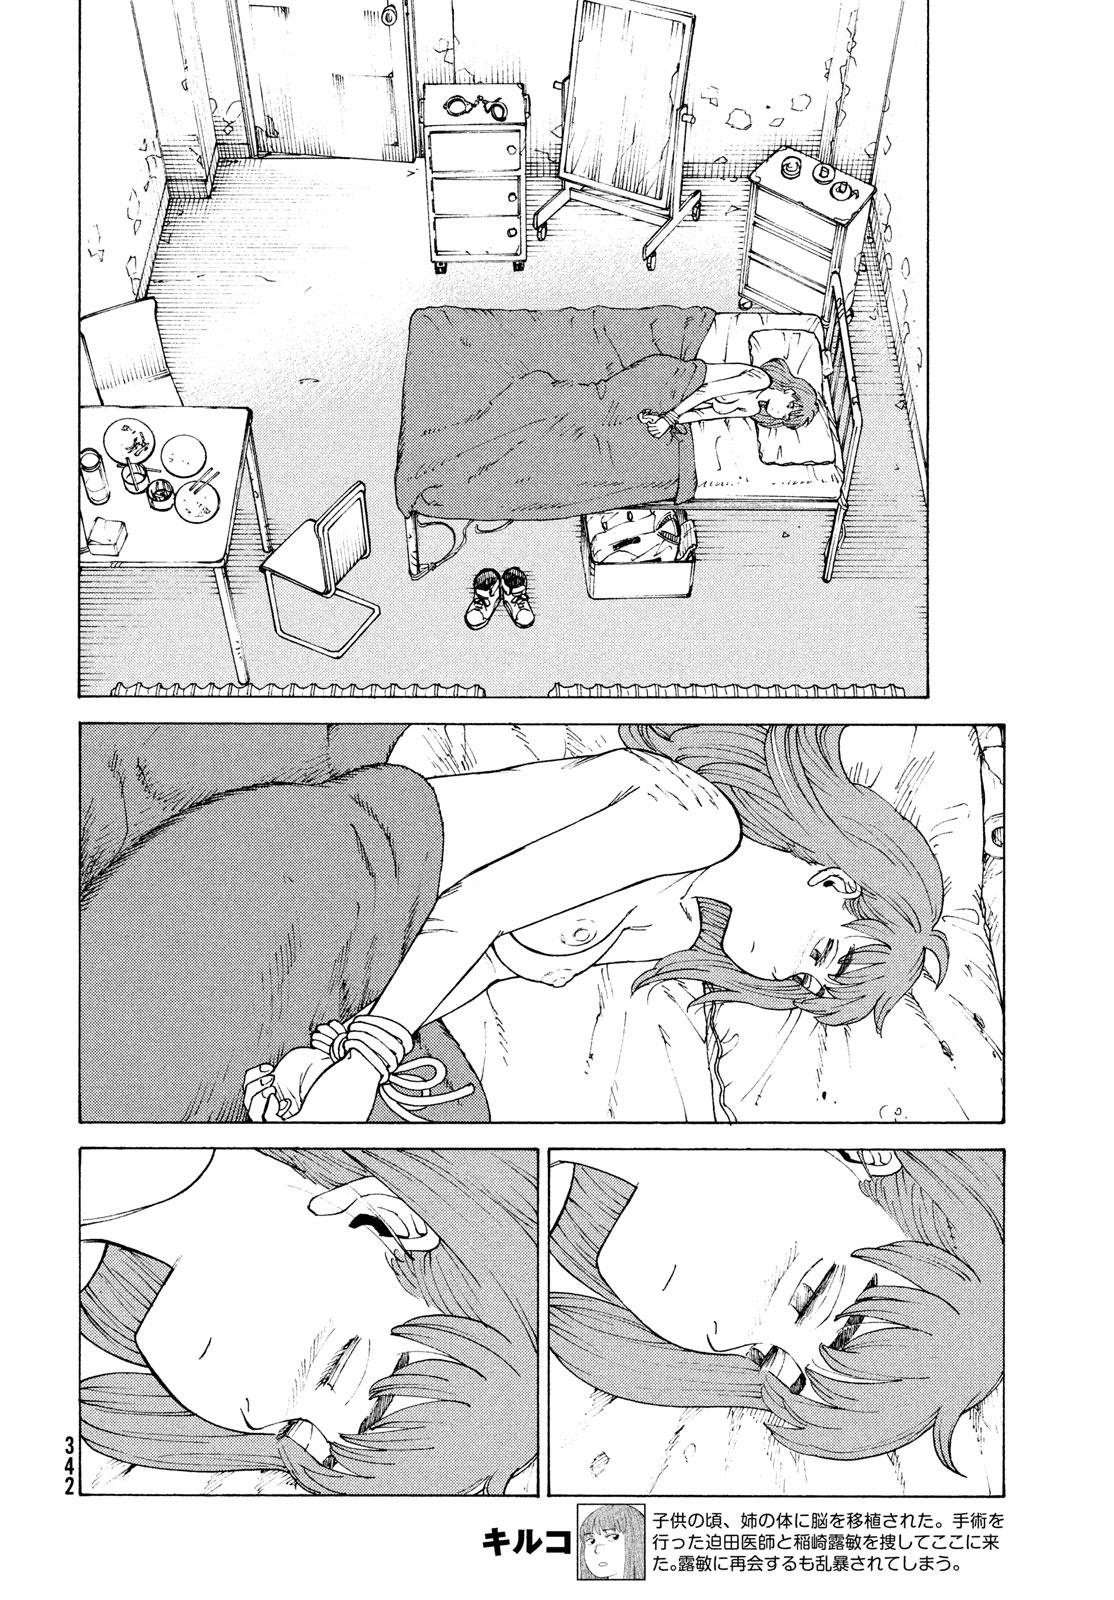 Tengoku Daimakyou Chapter 33: Inazaki Robin ➁ page 12 - Mangakakalot